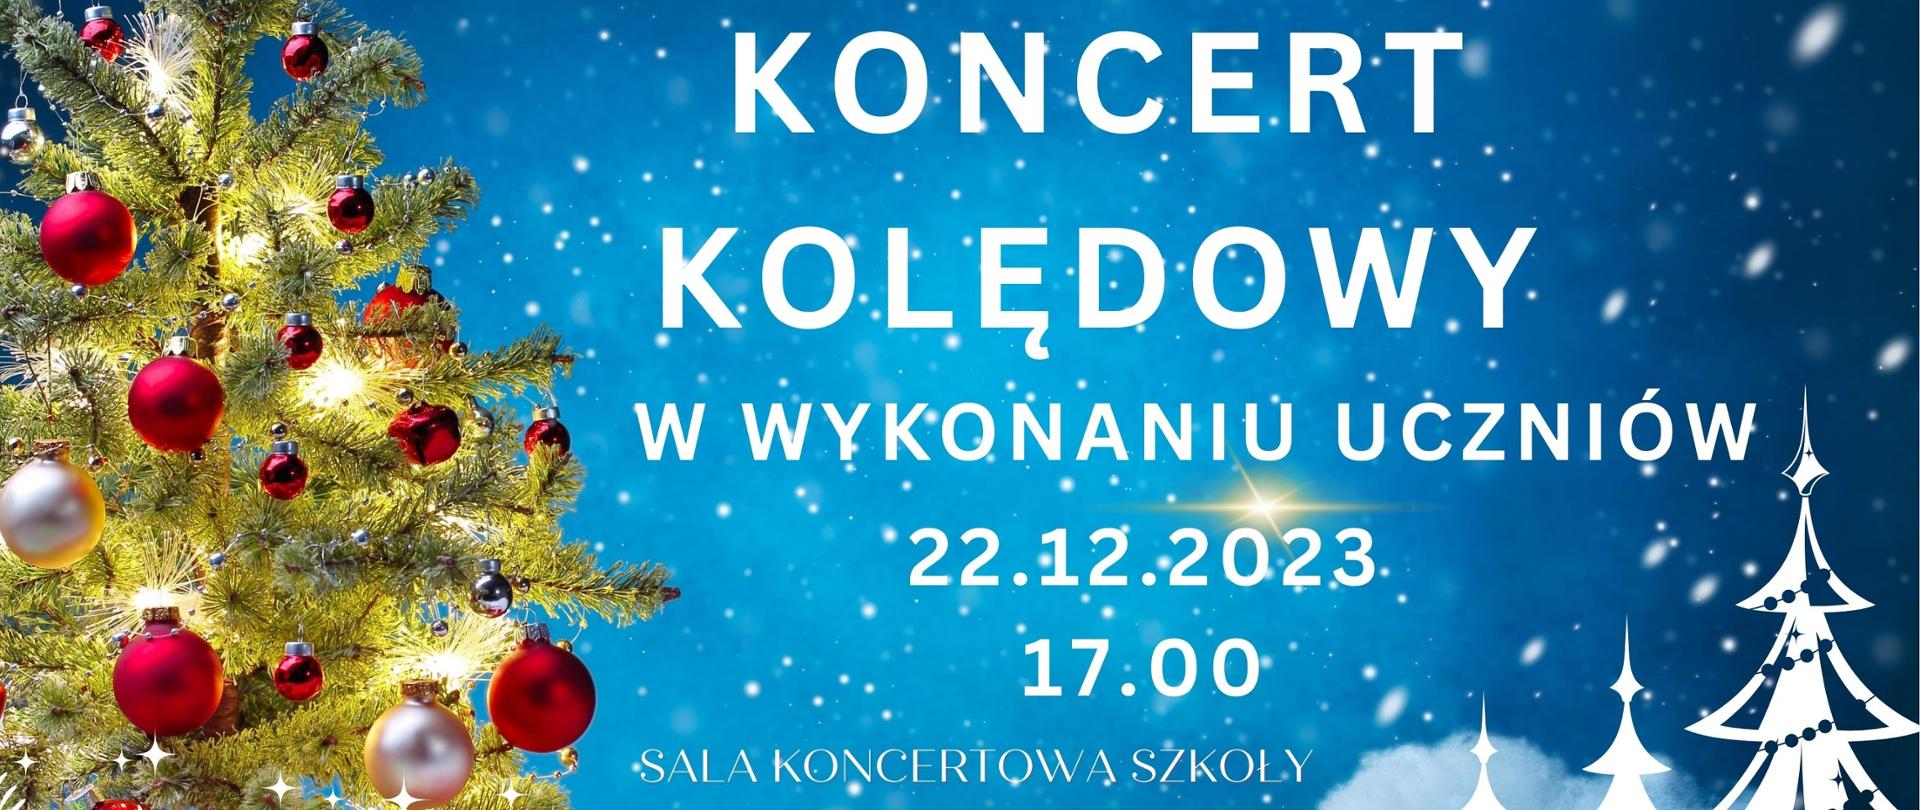 Plakat z białym napisem Koncert kolędowy w wykonaniu uczniów szkoły 22.12.2023 na niebieskim tle ze spadającym śniegiem. Po lewej zielona choinka świerkowa z bombkami czerwonymi i białymi i gwiazdą, po prawej graficzne choinki białe, na dole białe gwiazdki śniegowe